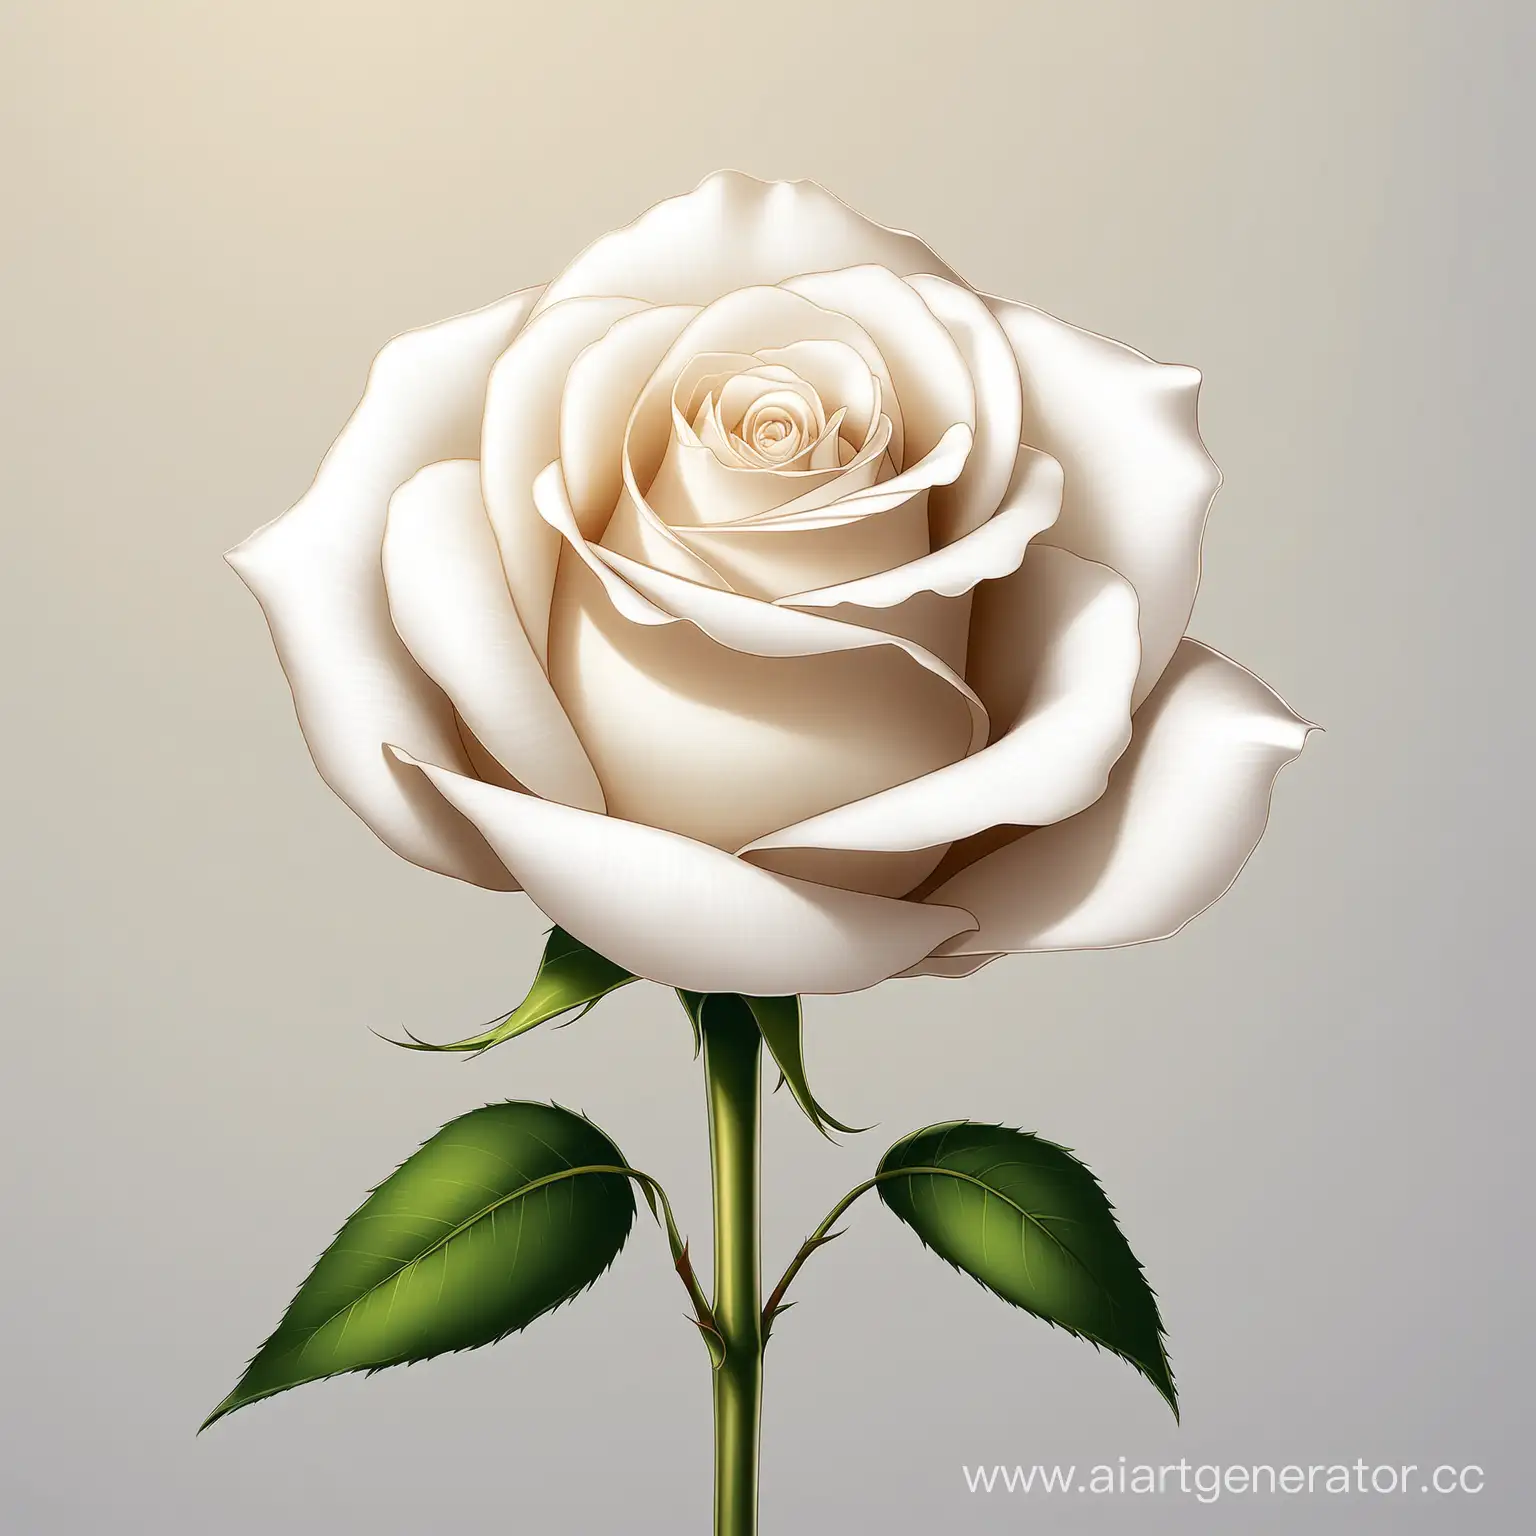 Elegant-White-Rose-Blossoming-in-Serene-Garden-Setting